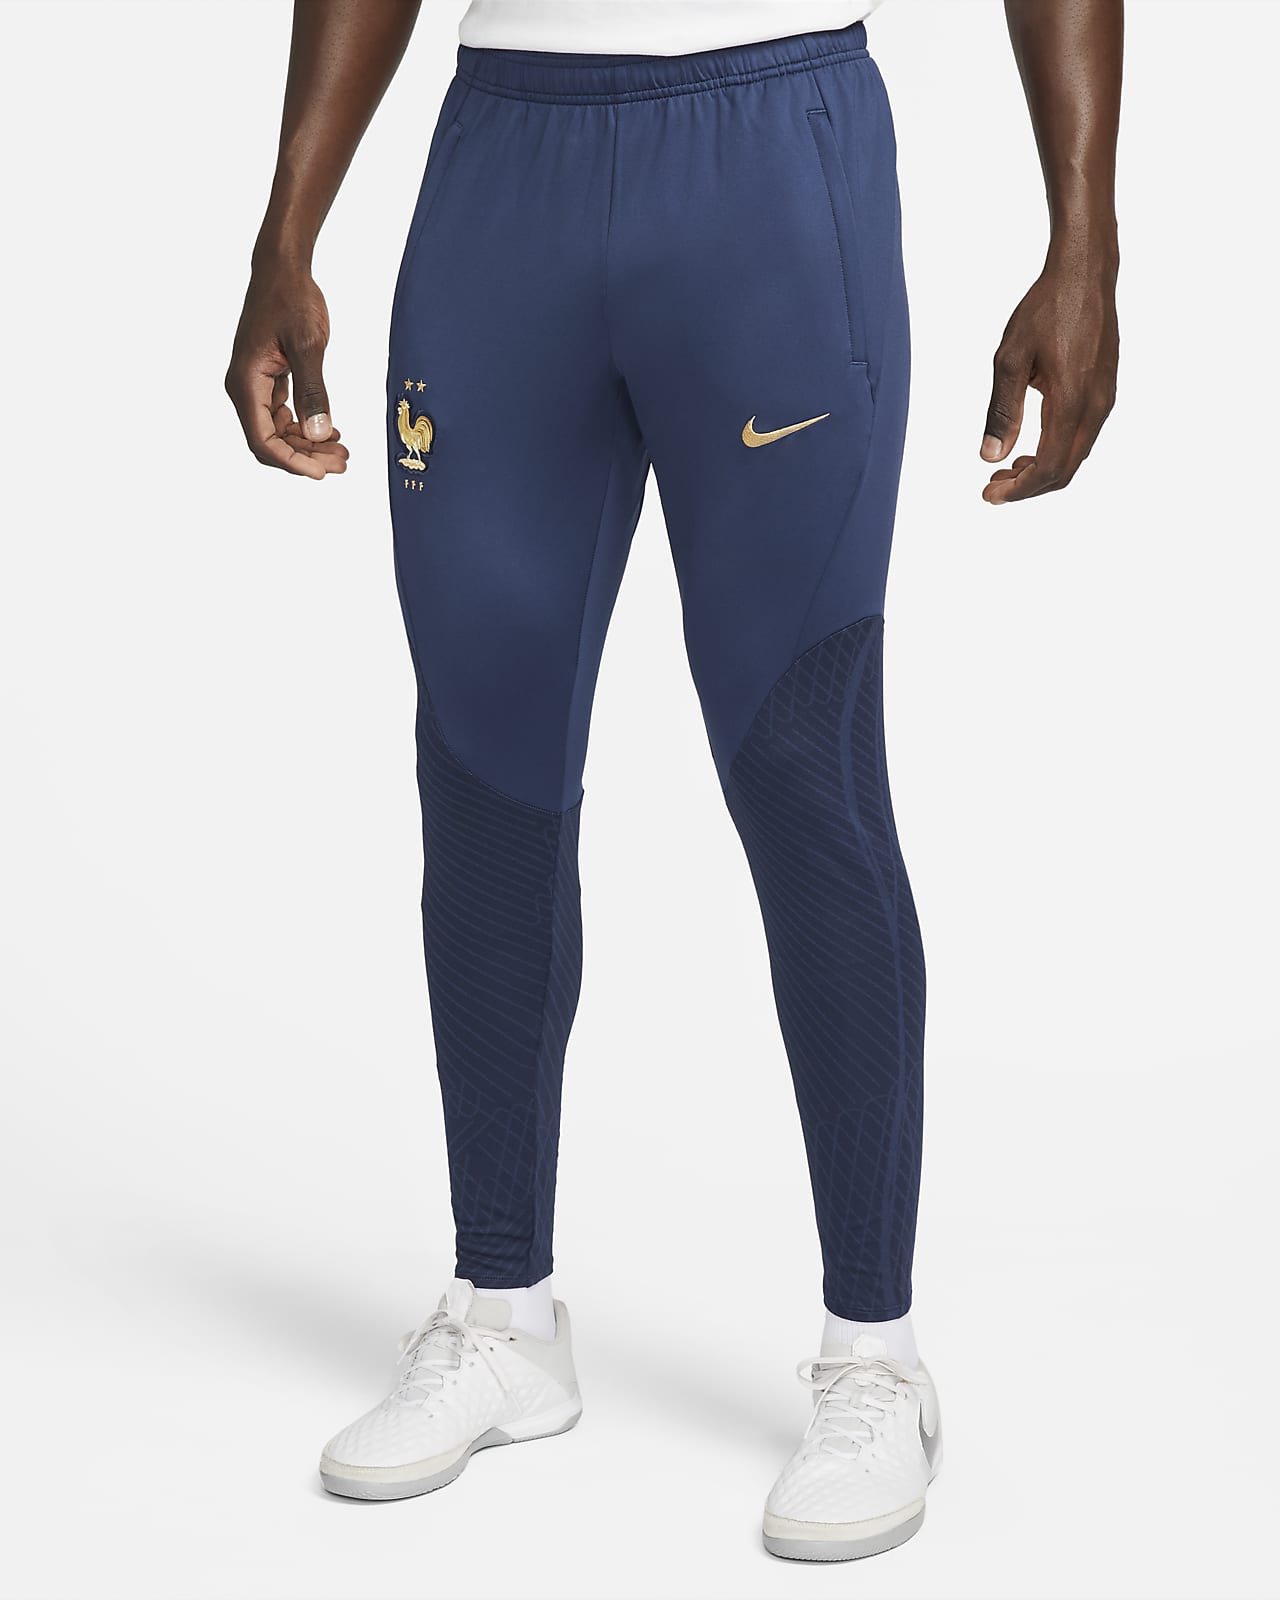 FFF Strike Nike Dri-FIT Herren-Fußballhose aus Strickmaterial